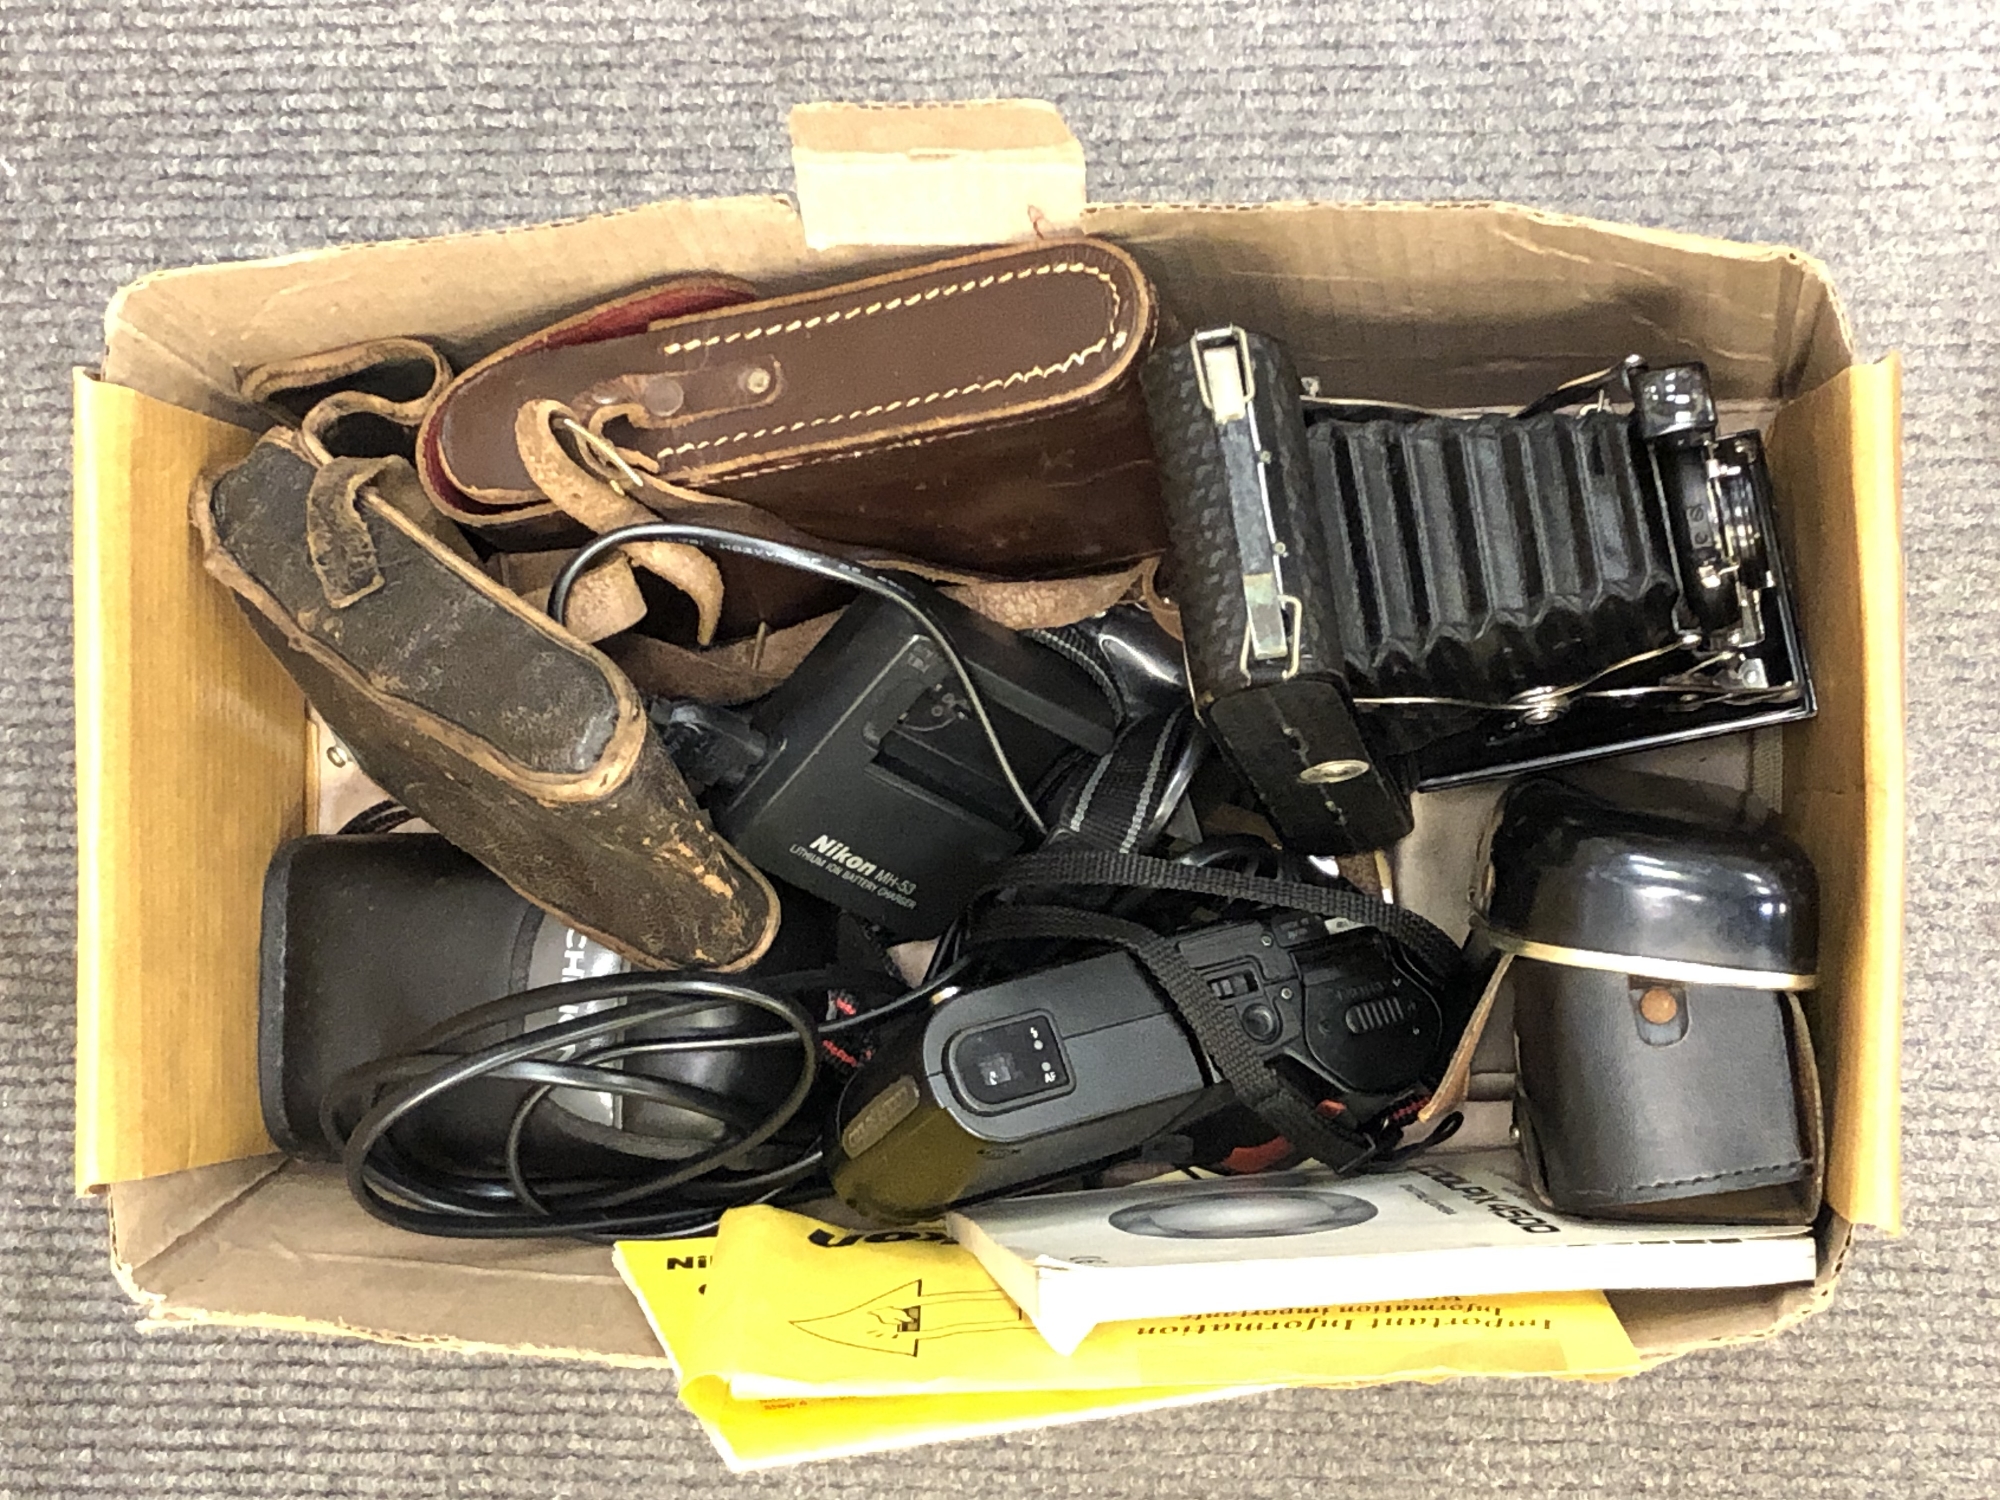 A box of cameras including Nikon, Kodak,